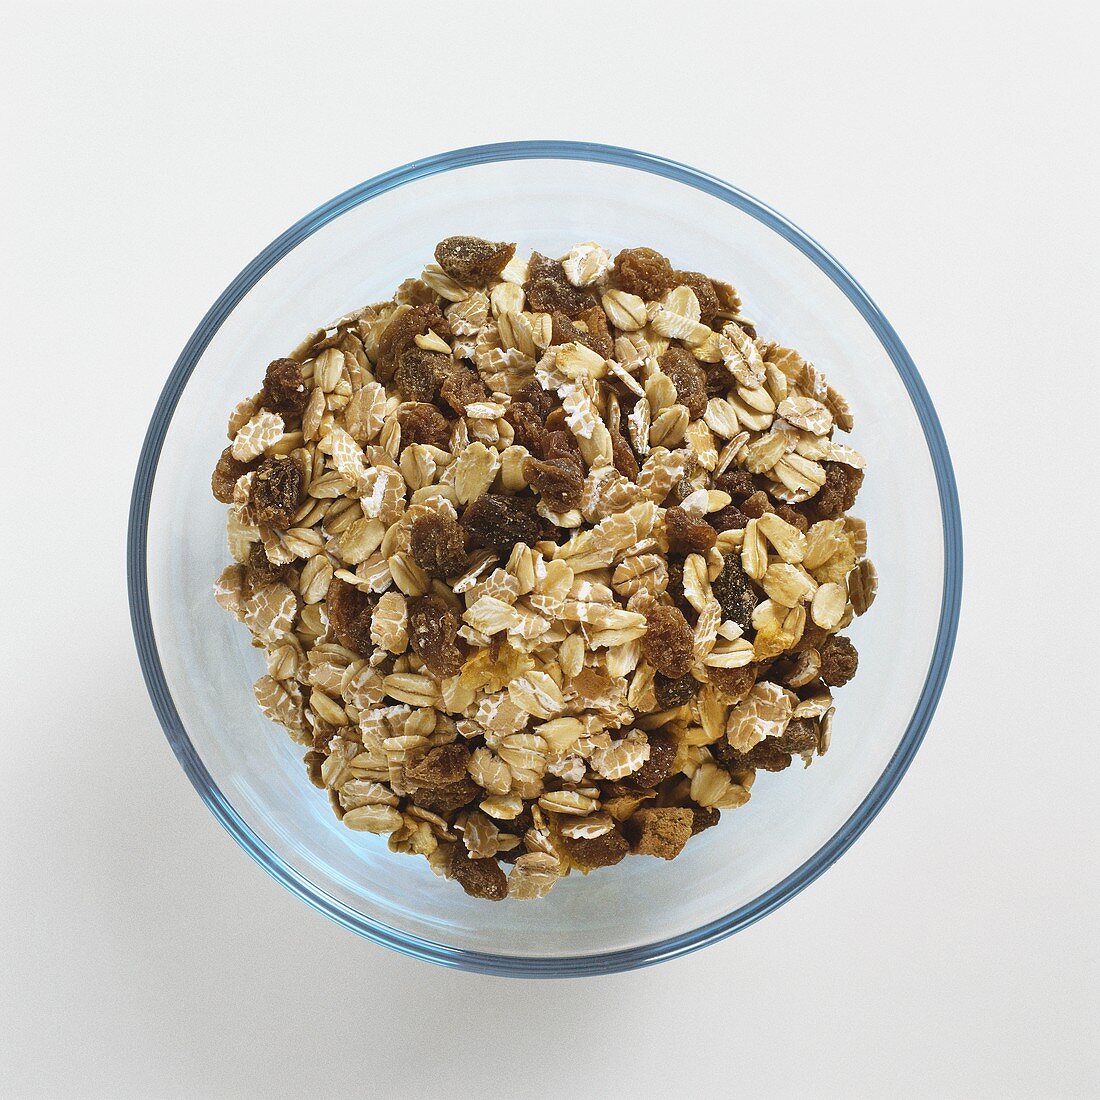 Muesli (rolled oats, raisins etc.) in glass bowl